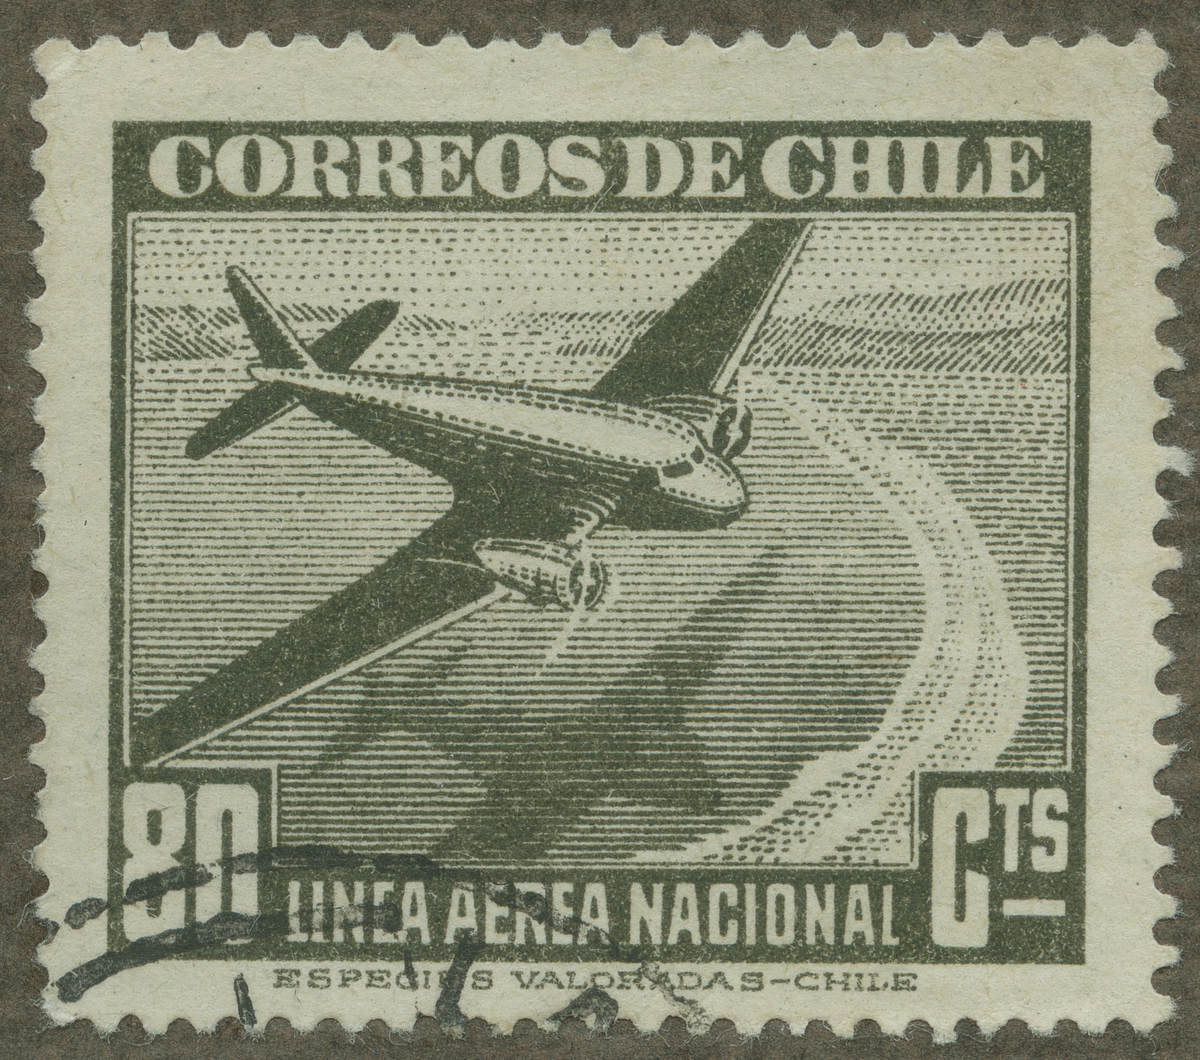 Frimärke ur Gösta Bodmans filatelistiska motivsamling, påbörjad 1950.
Frimärke från Chile, 1942. Motiv av Tvåmotorigt postflygplan Linea aerea nacional